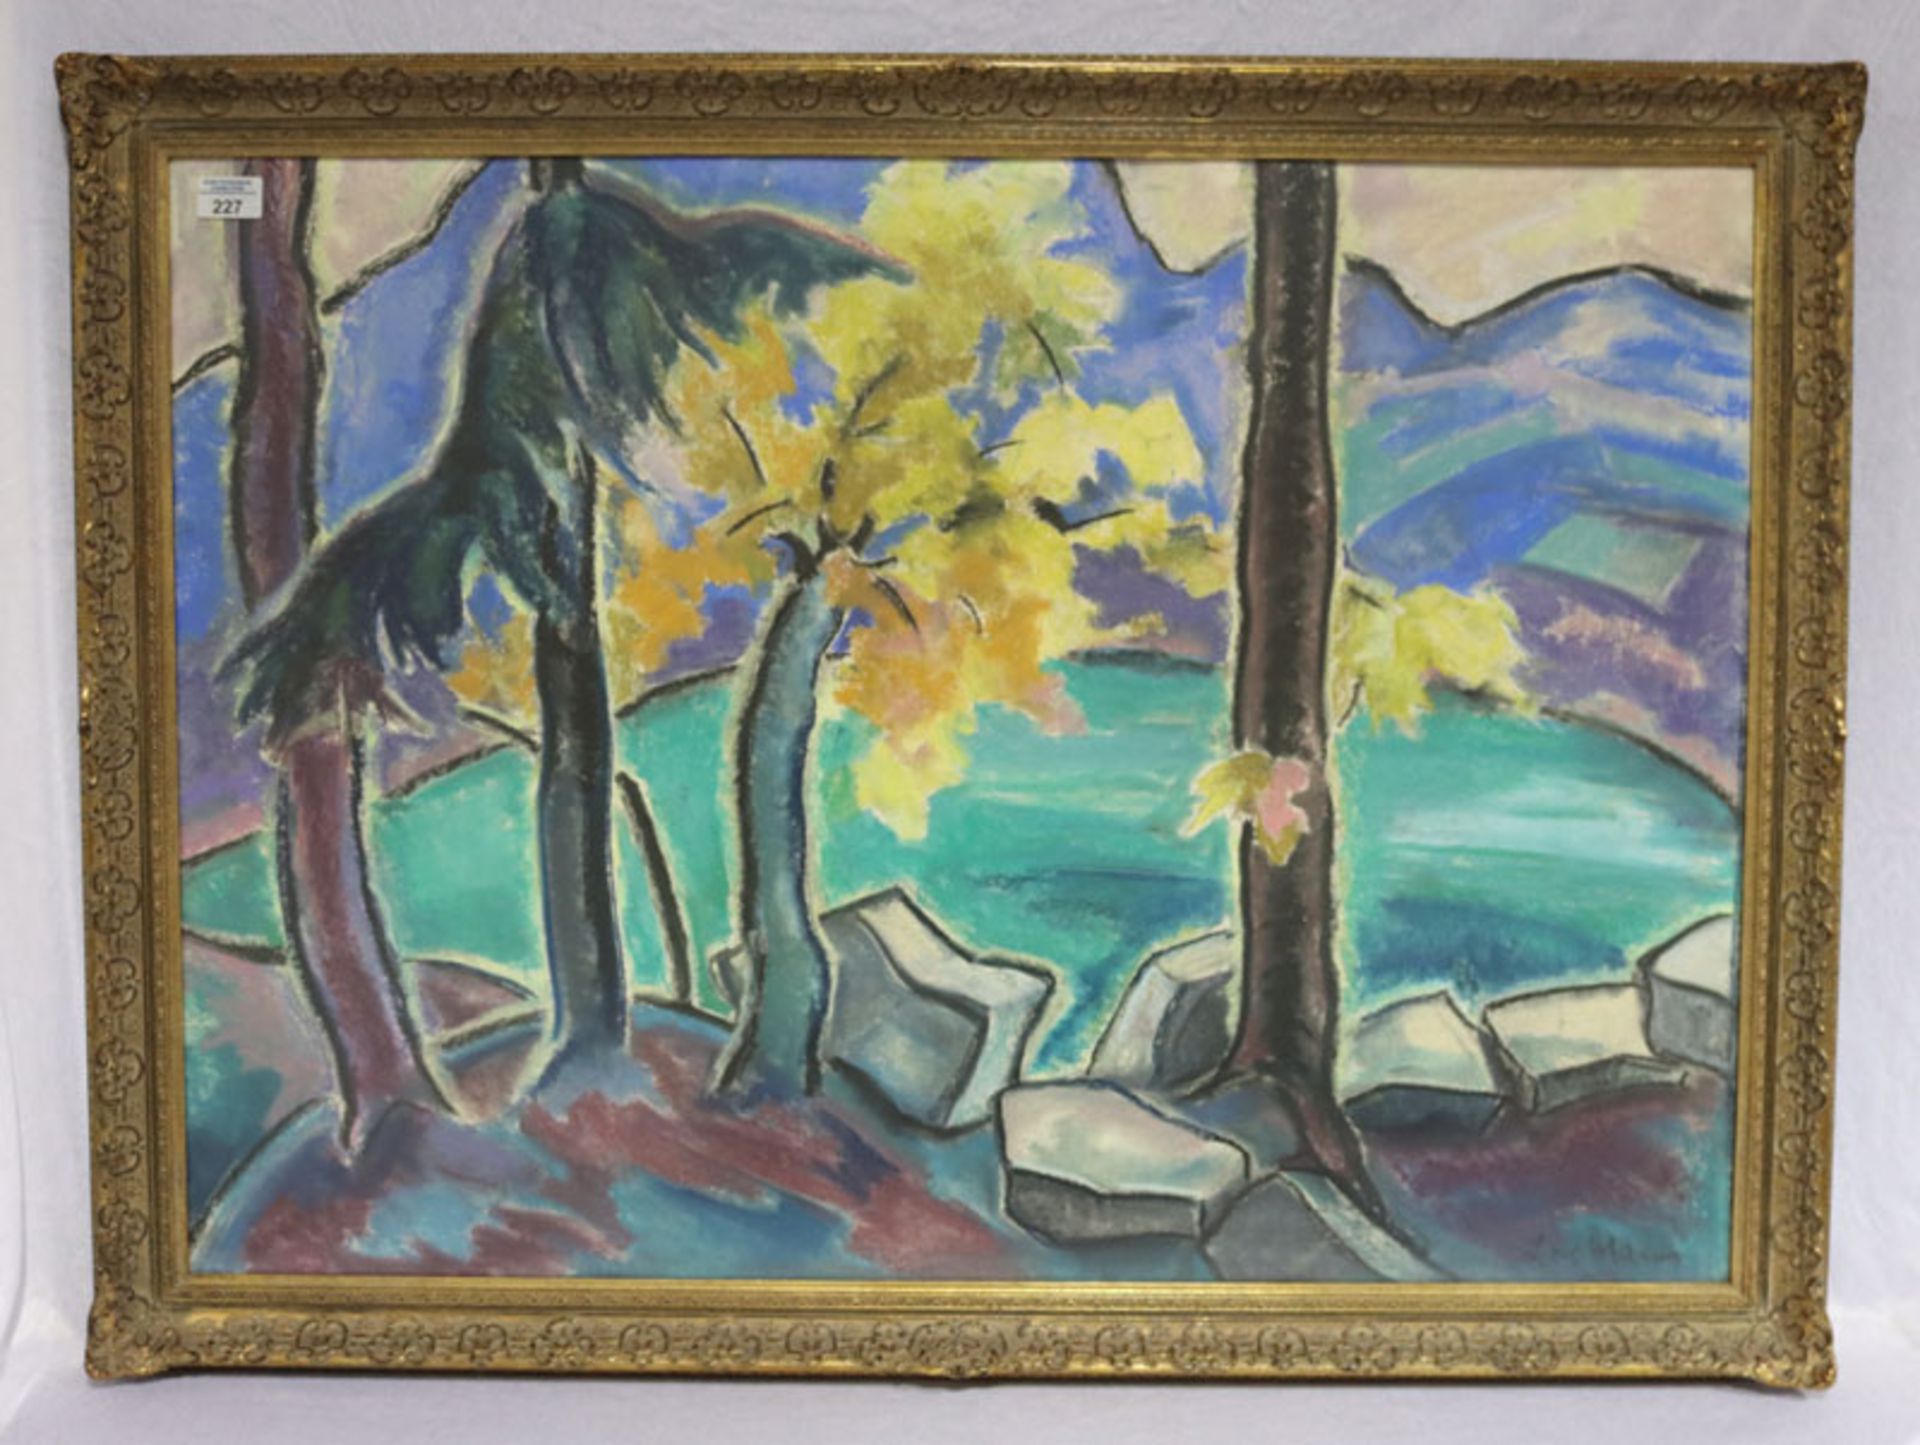 Gemälde Pastell 'Gebirgssee', signiert Lore Ma... ?, unter Kunststoff gerahmt, Rahmen leicht